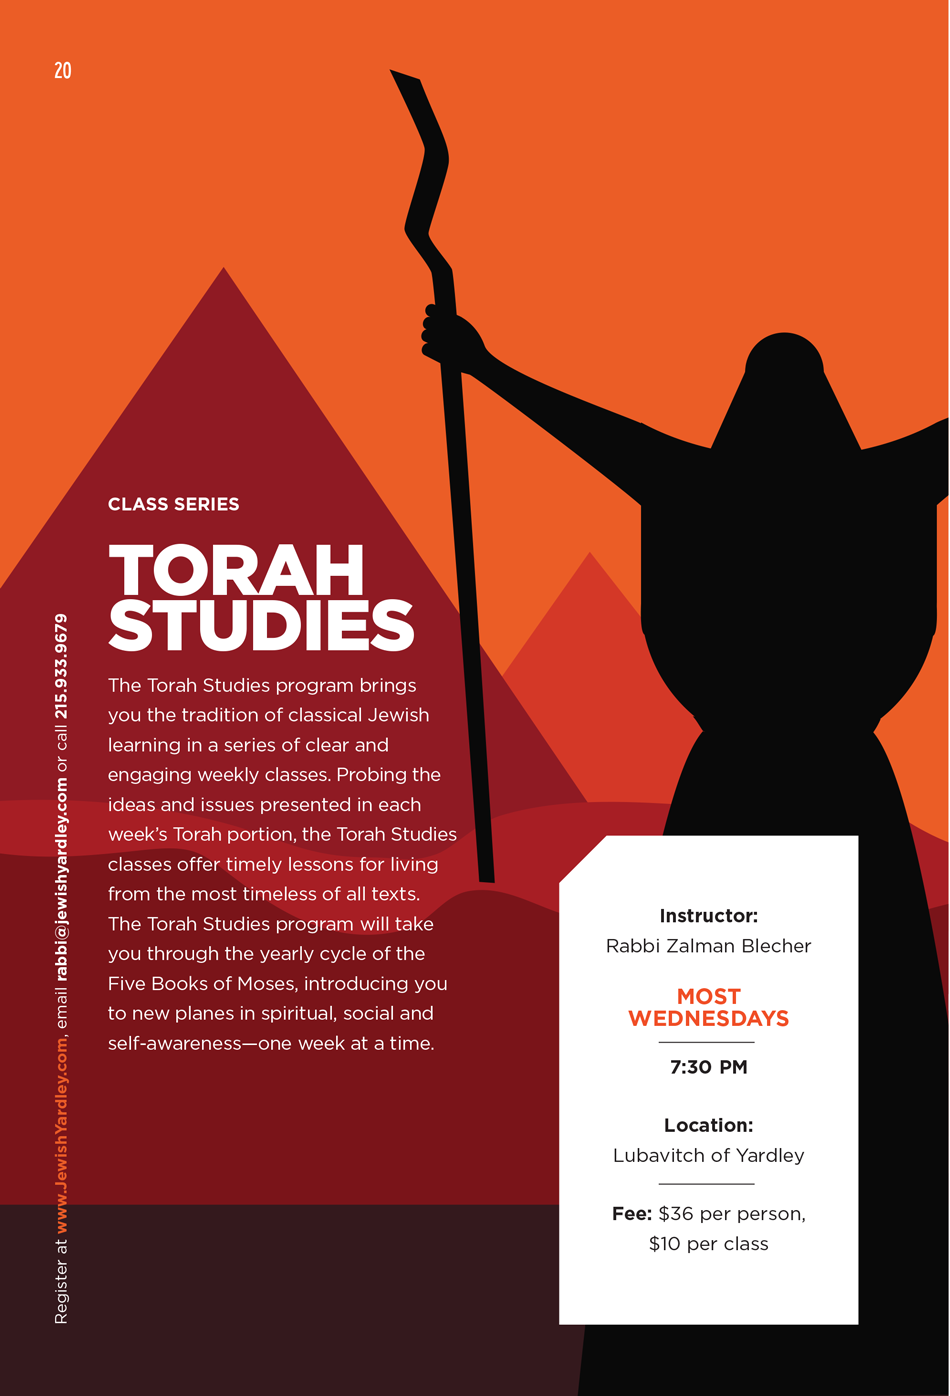 Torah Studies by Rabbi Zalman Blecher